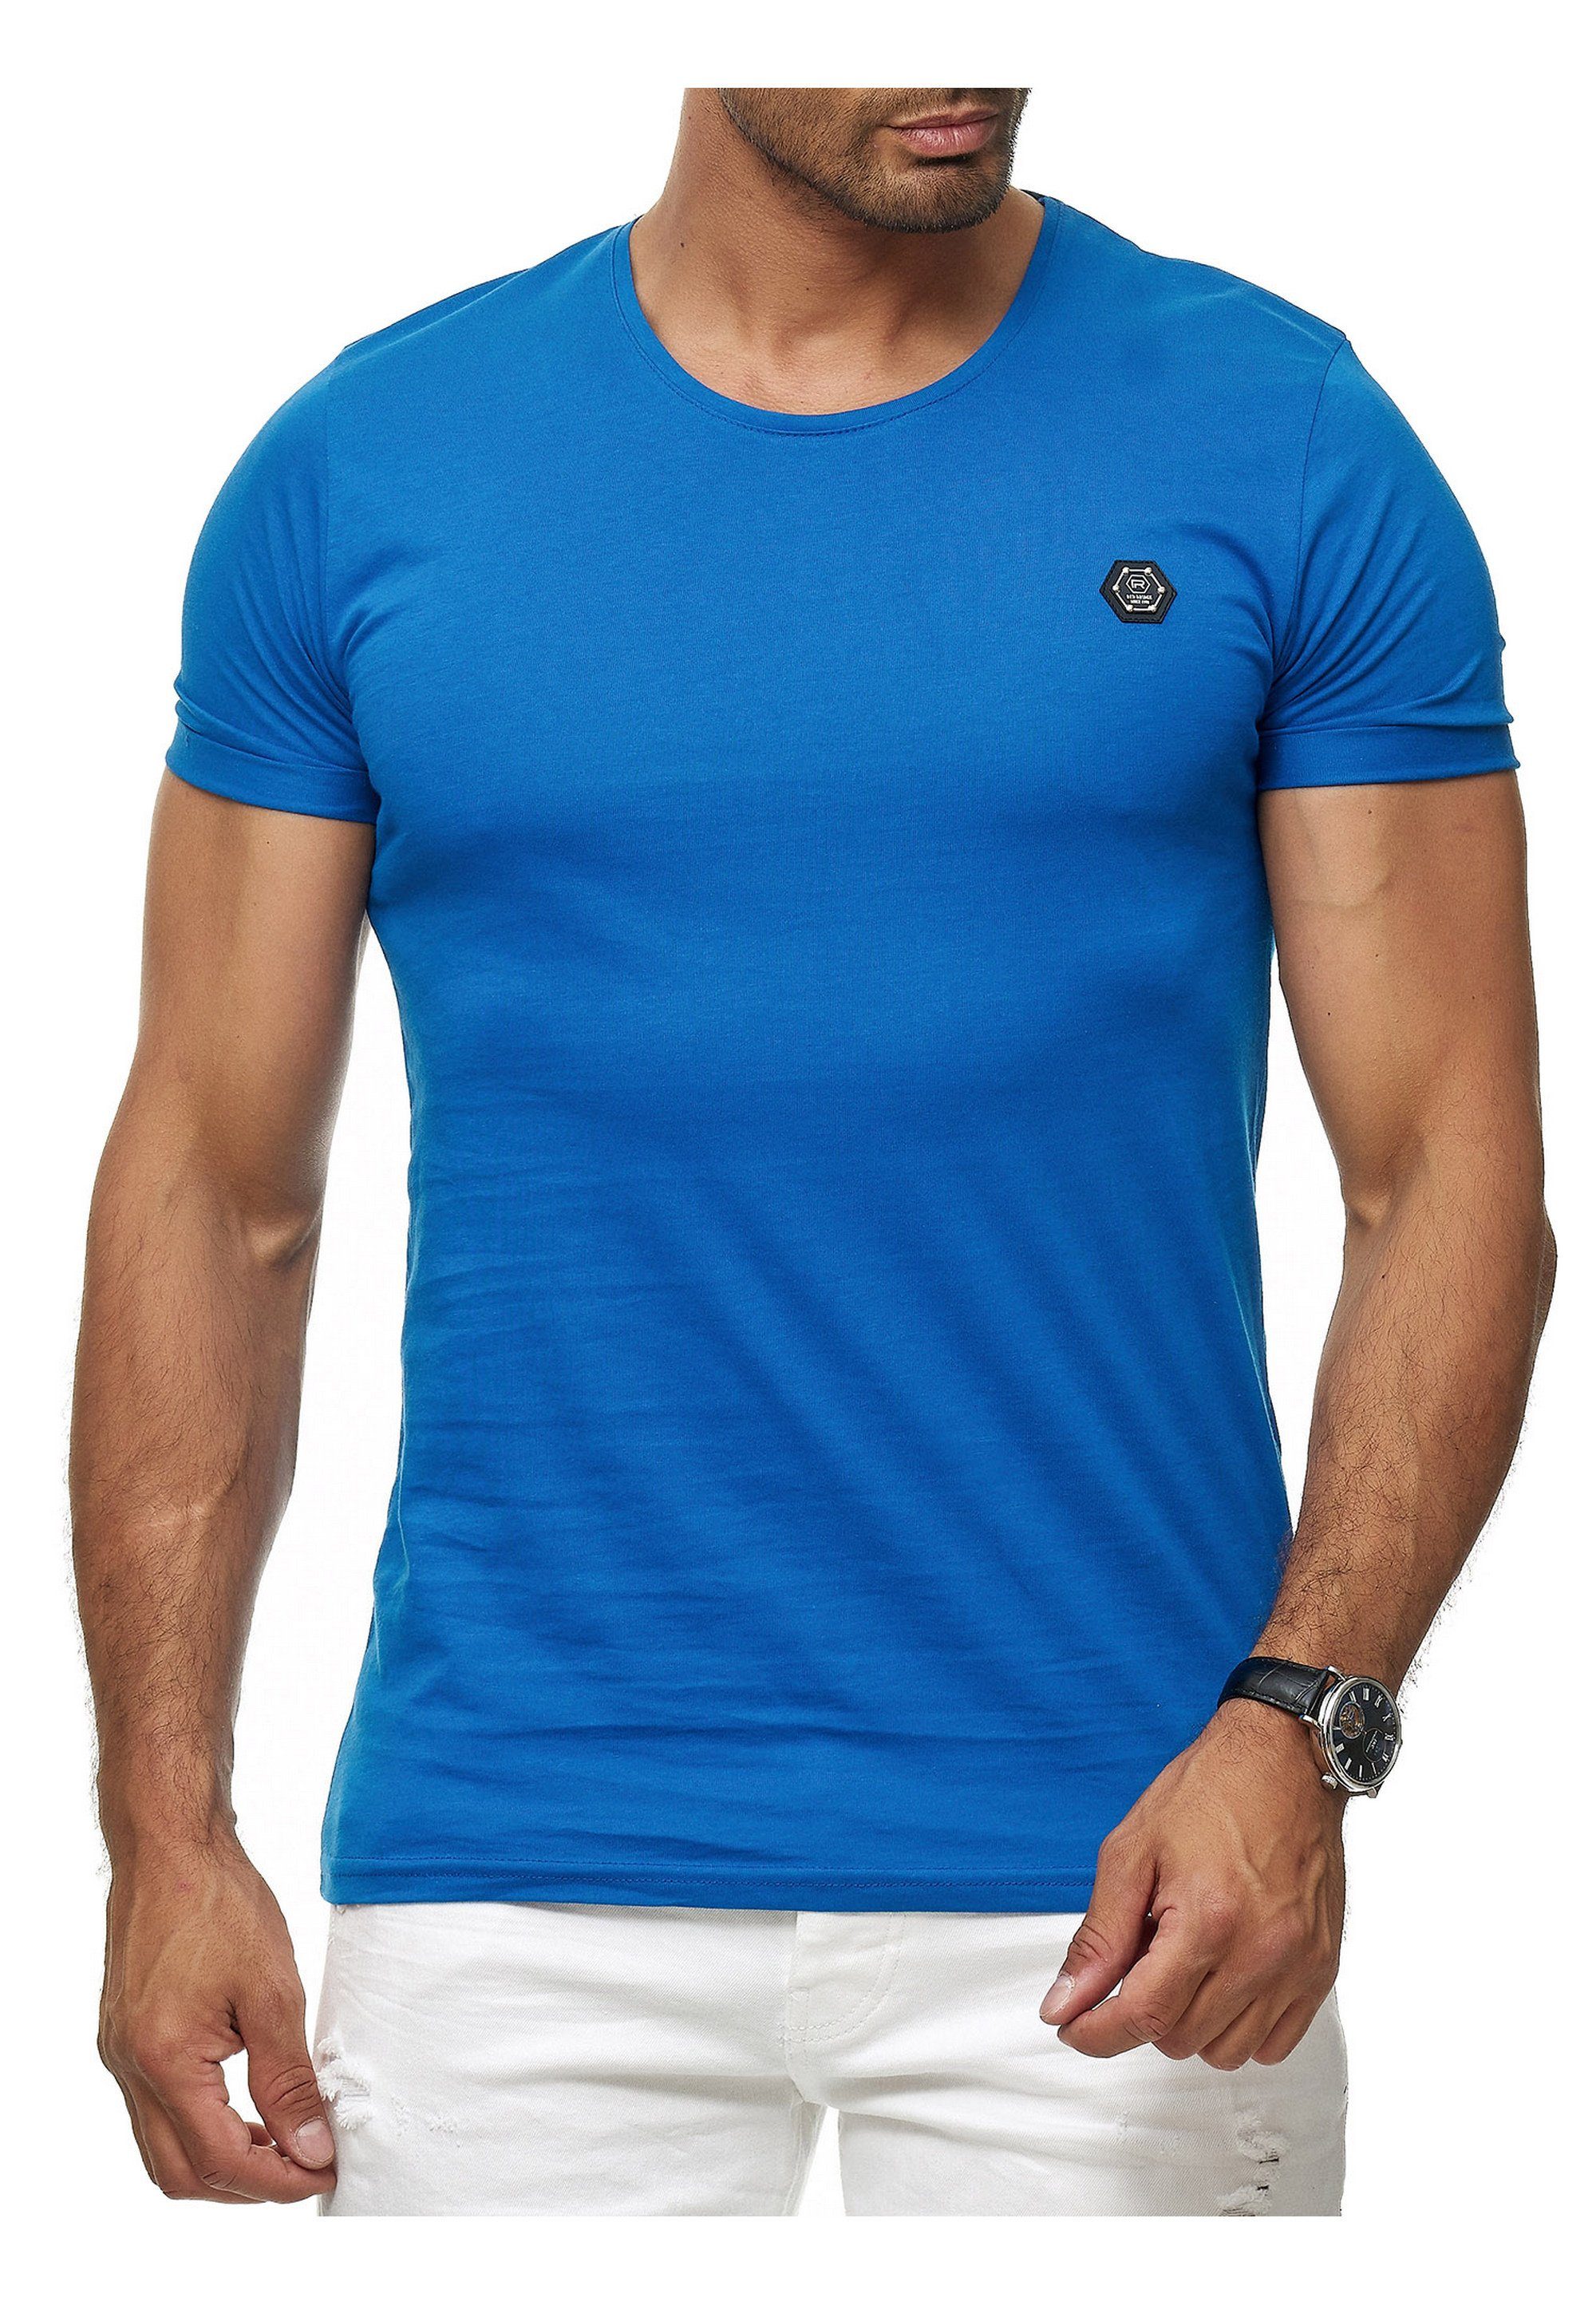 blau RedBridge T-Shirt mit Brandlogo sportlichem Atlanta